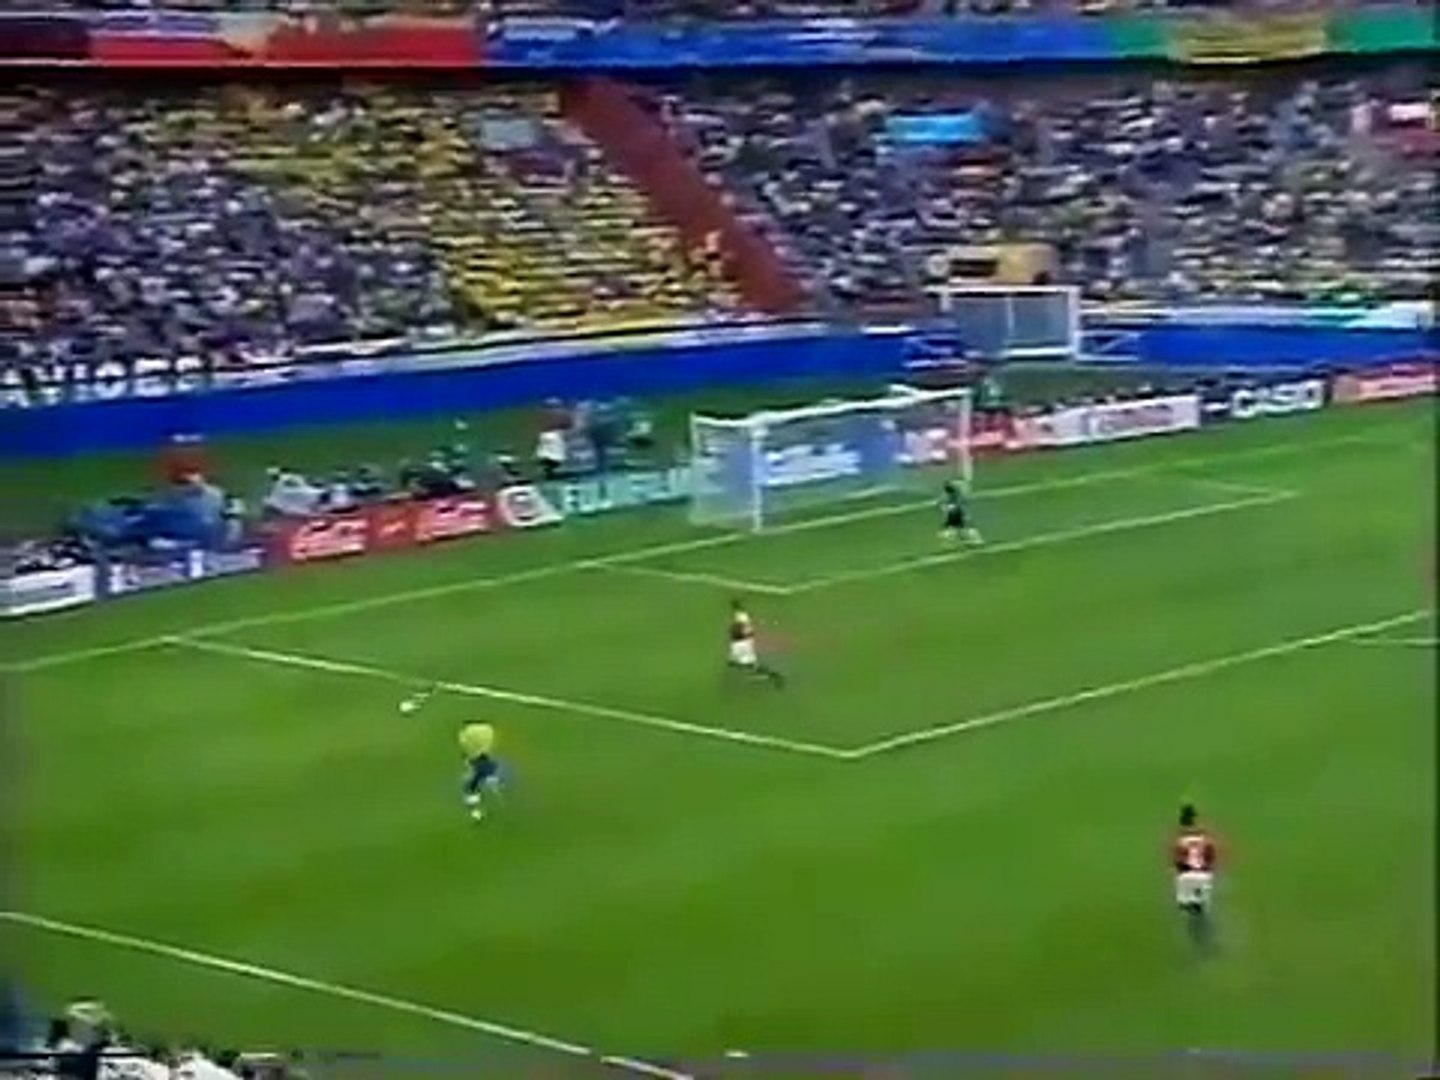 Brasil×Holanda semifinal copa 1998 completo, #Brasil_e_Holanda copa 1998  Um dos maiores jogos de seleções em uma copa do mundo, agora disponível e  Completo. Após encontros emblemáticos nas Copas de